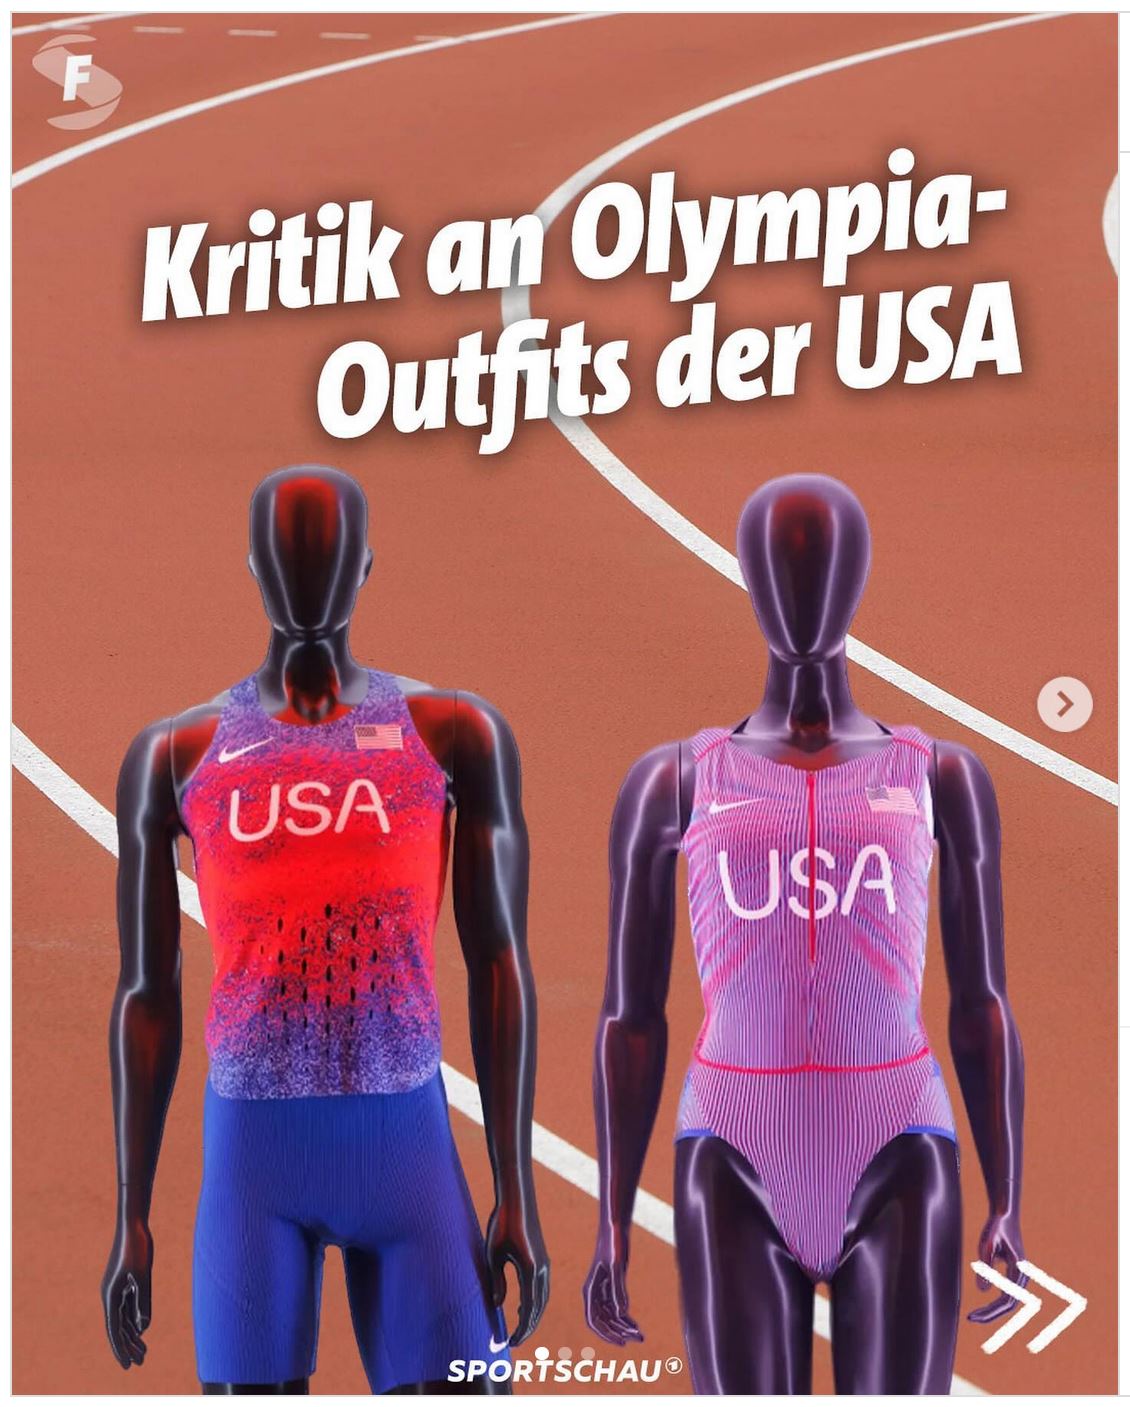 Screenshot Instagram - Foto mit den Trikots für die US-Athlet*innen und Text: Kritik an Olympia-Outfits der USA